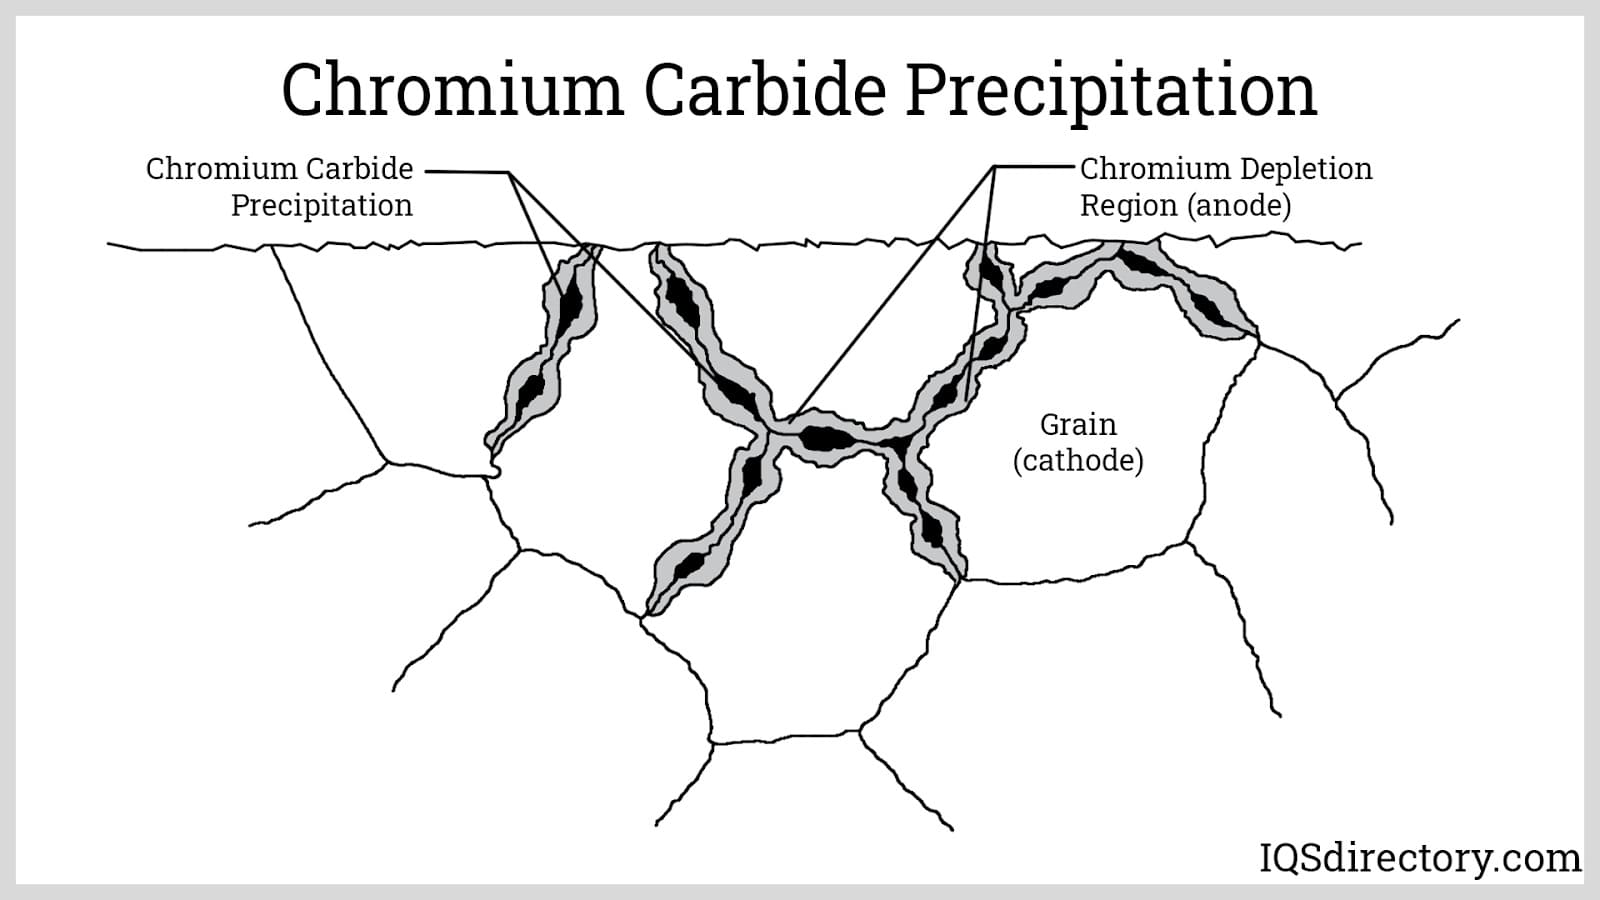 Chromium Carbide Precipitation